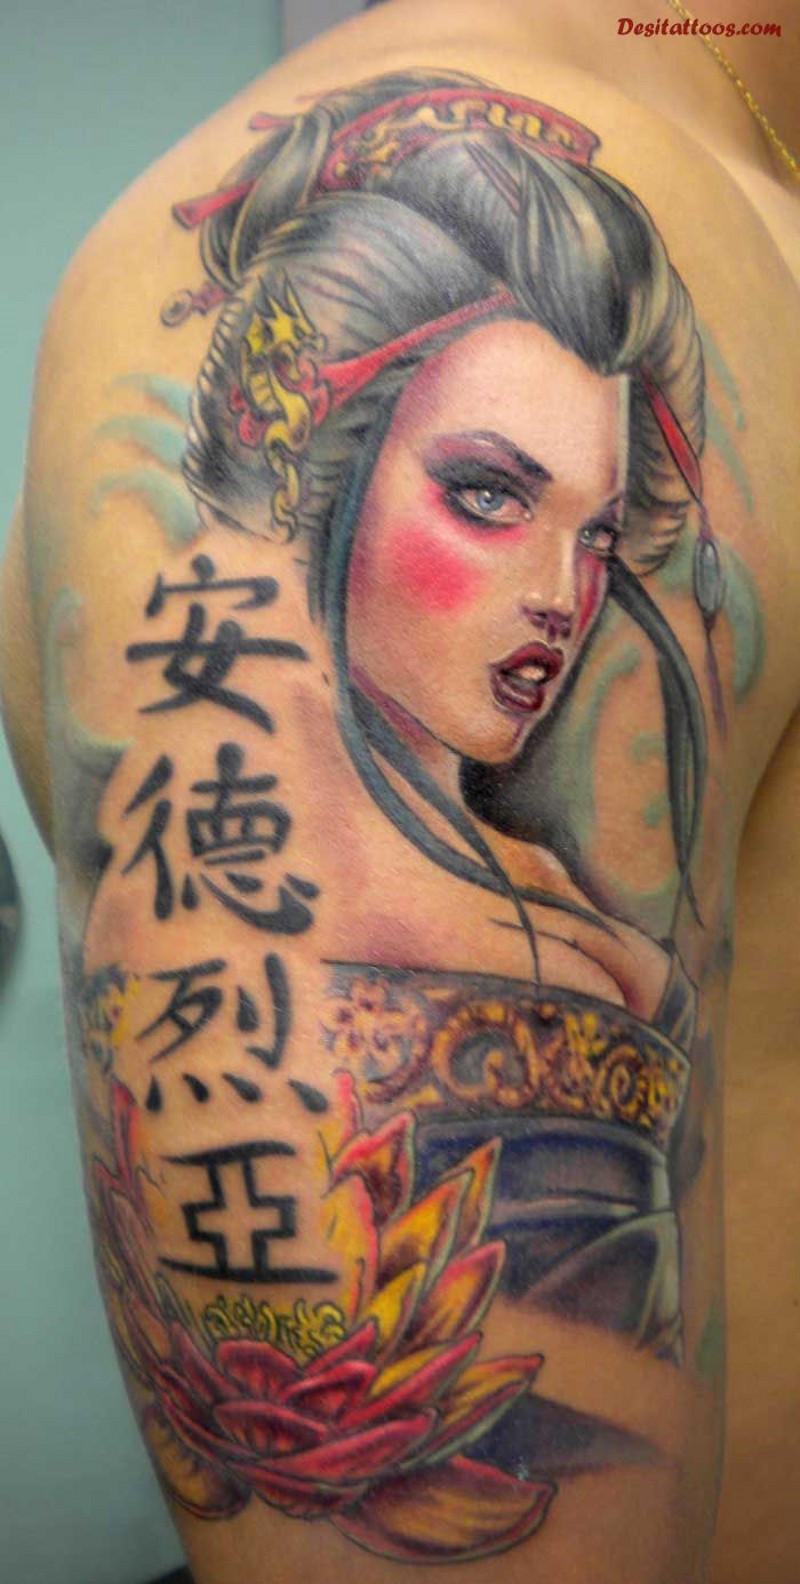 大臂中国风彩色性感艺伎与汉字纹身图案